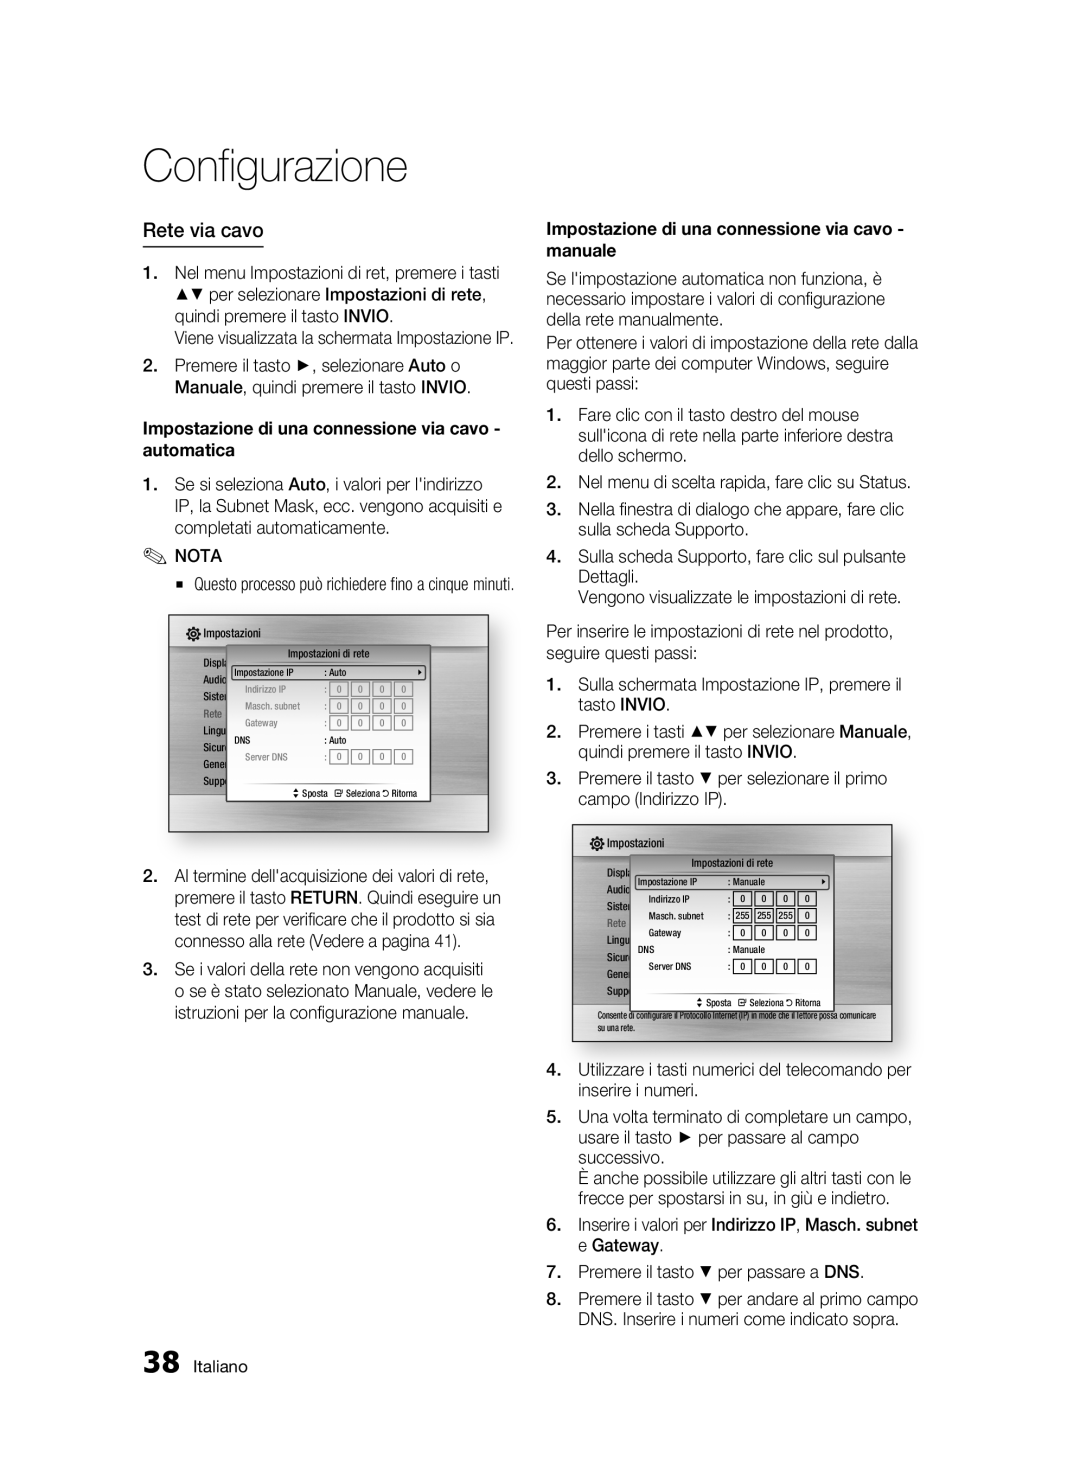 Samsung BD-C6500/XEF manual Rete via cavo, Impostazione di una connessione via cavo - automatica, Configurazione 